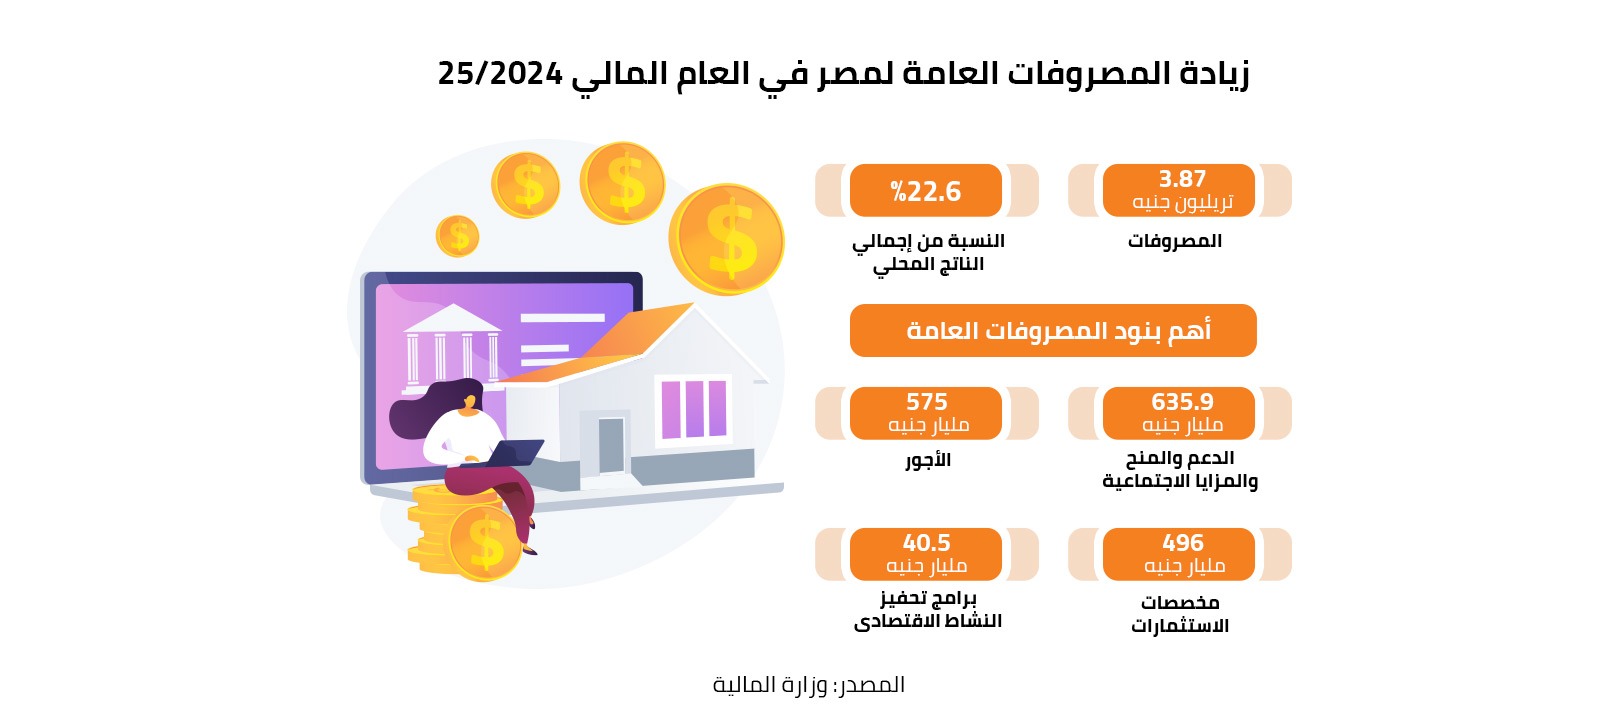 زيادة المصروفات العامة لمصر في العام المالي 2024/25